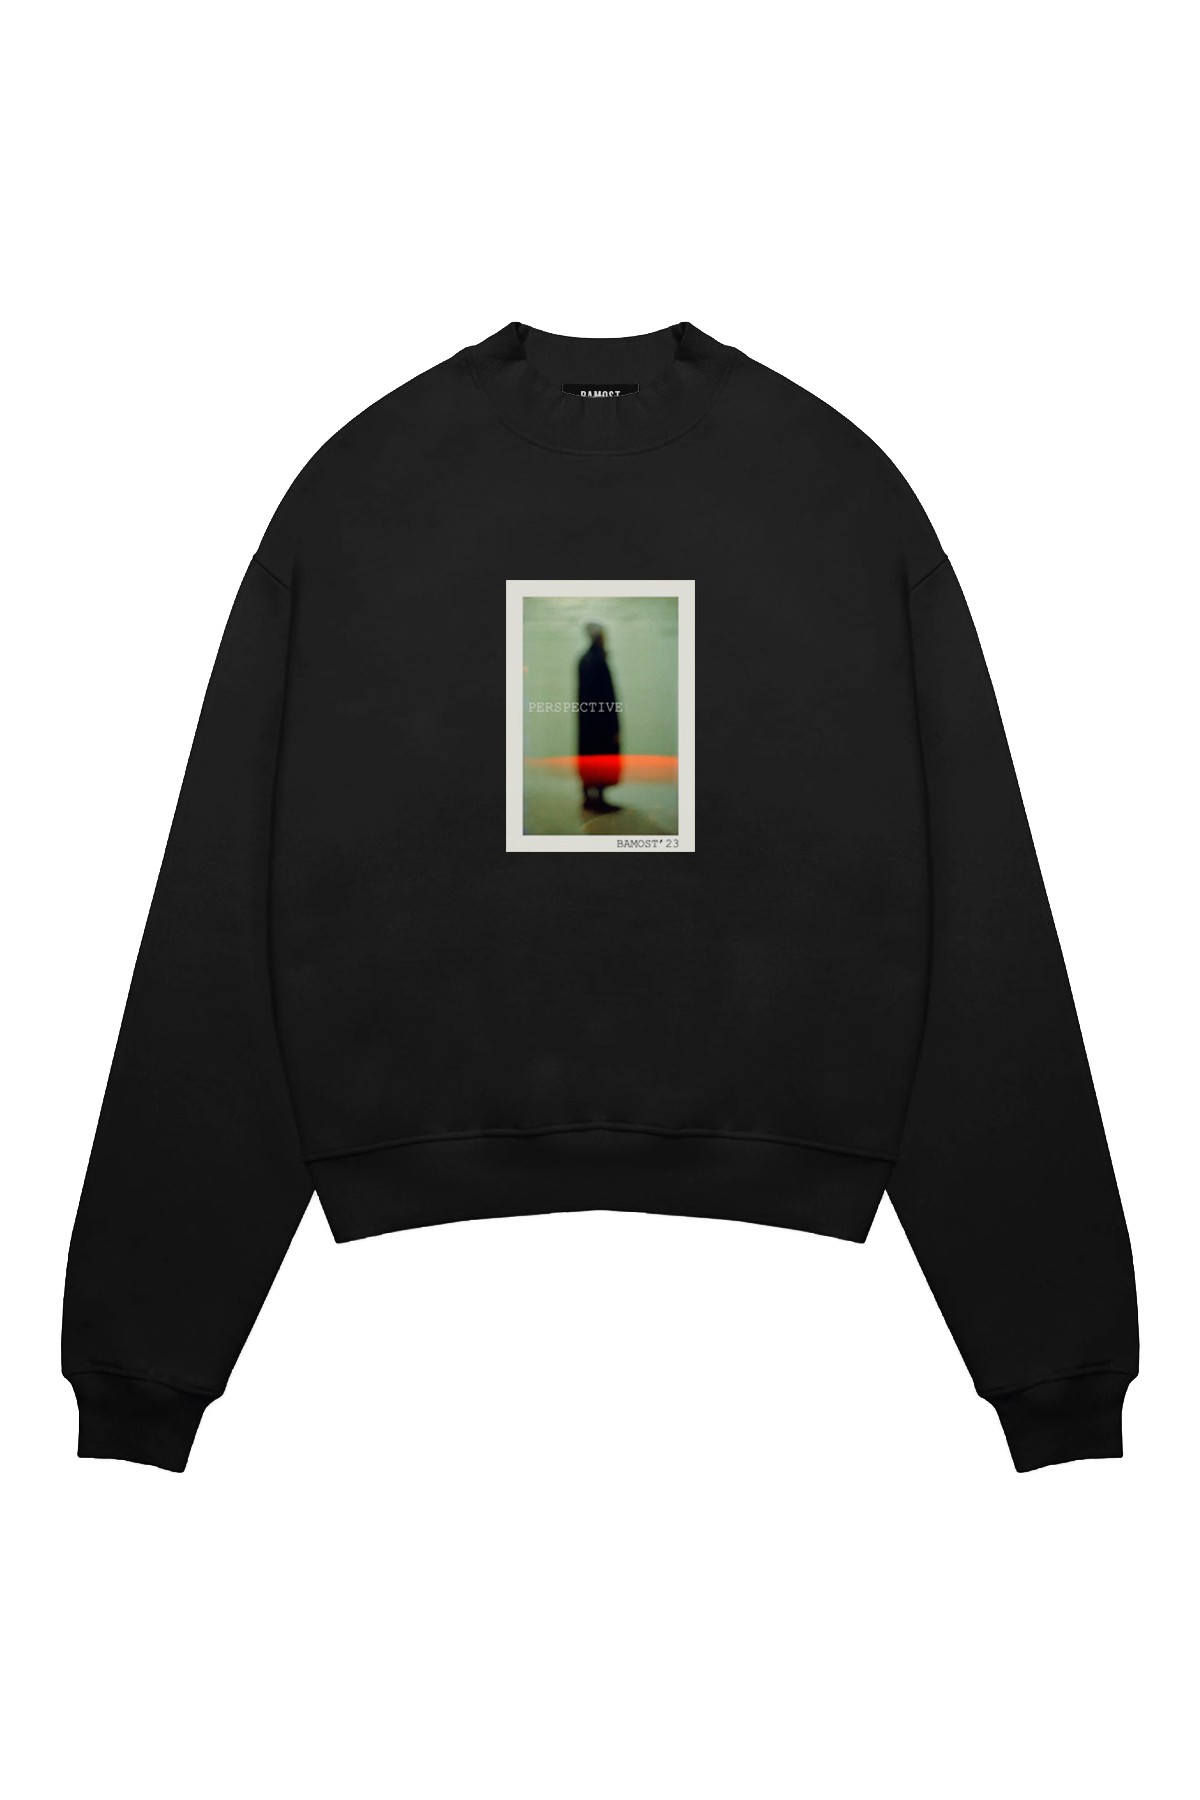 Perspective'3 - Oversize Sweatshirt - BLACK